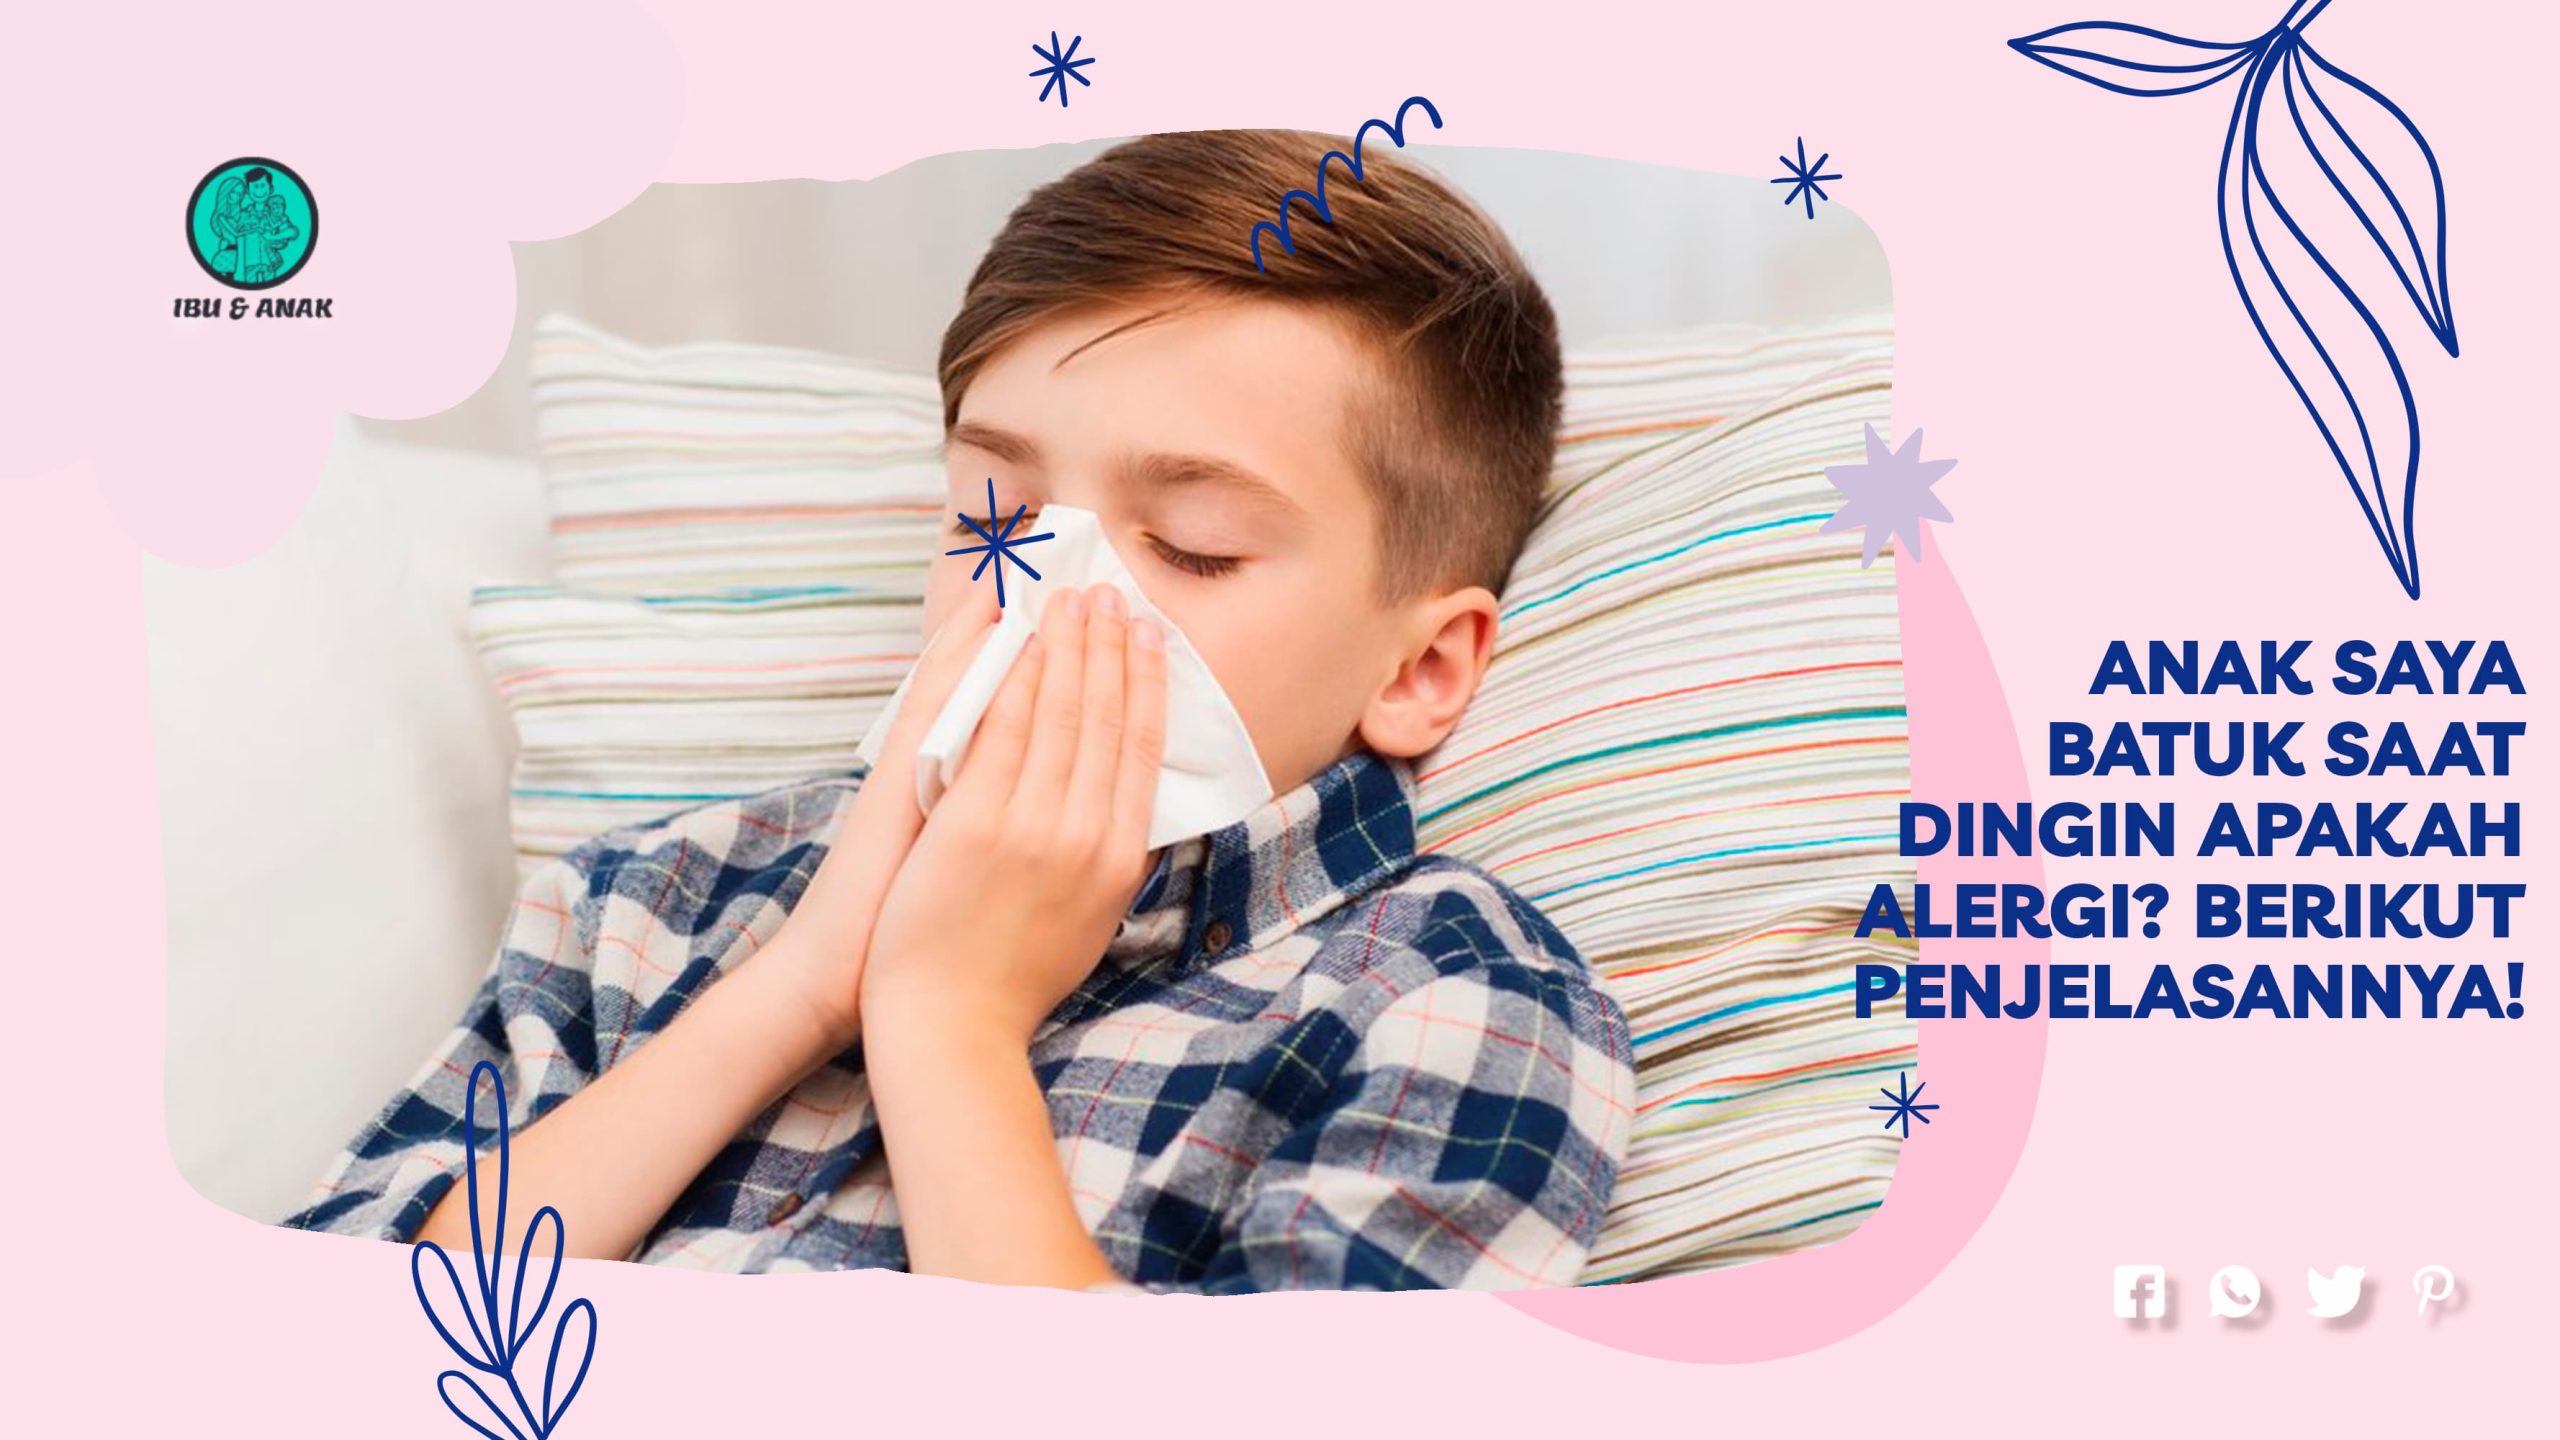 Anak Saya Batuk Saat Dingin Apakah Alergi? Berikut Penjelasannya!